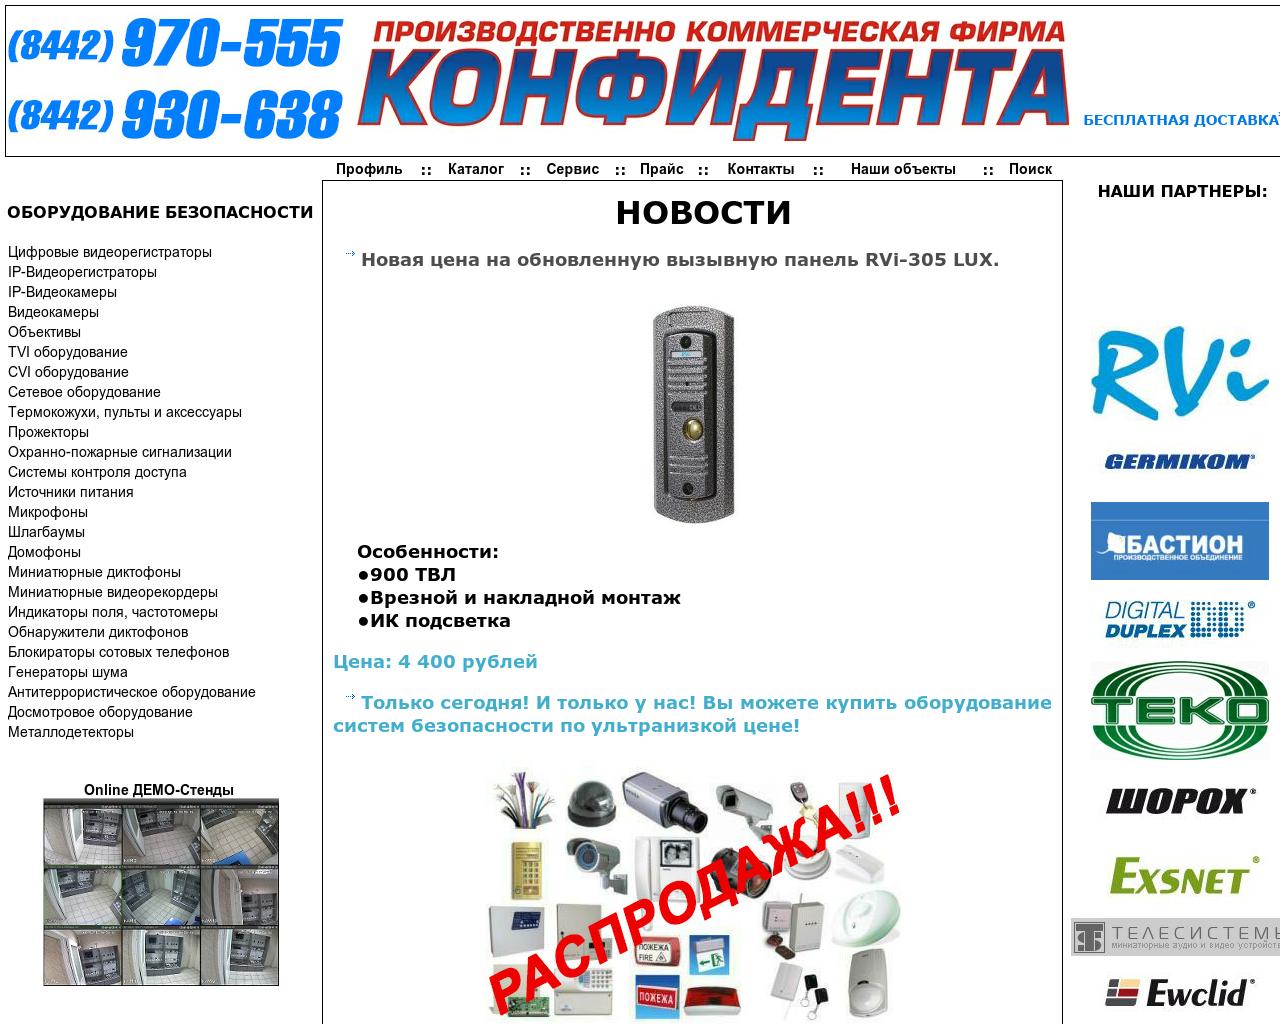 Изображение сайта kft.ru в разрешении 1280x1024